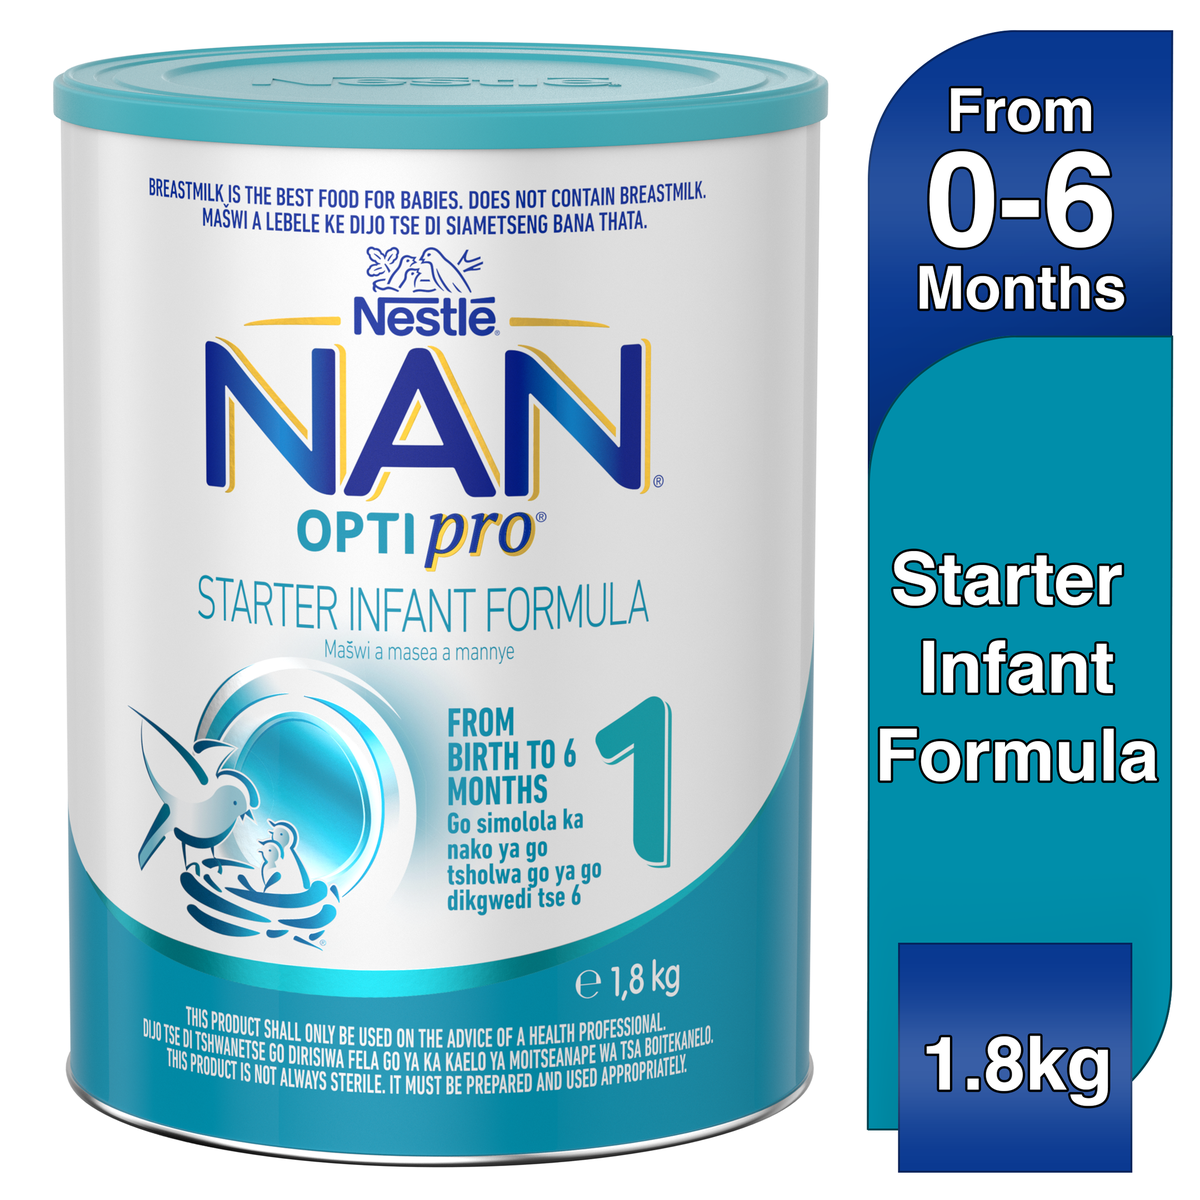 NAN OPTIPRO 1 (800g), Infant Formula